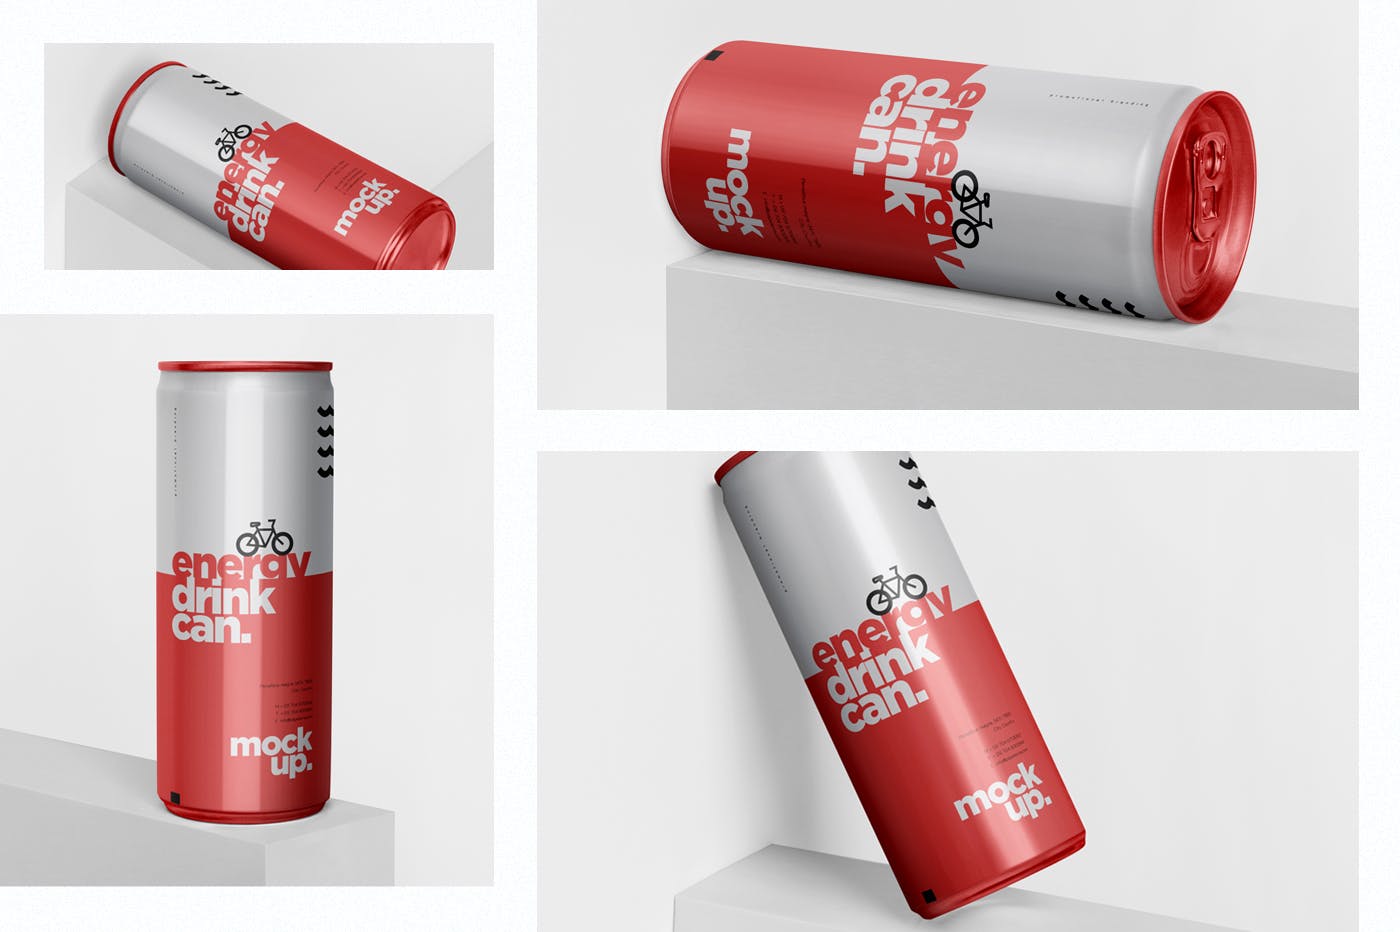 能量饮料易拉罐罐头外观设计素材中国精选模板 Energy Drink Can Mock-Up – 250 ml插图(1)